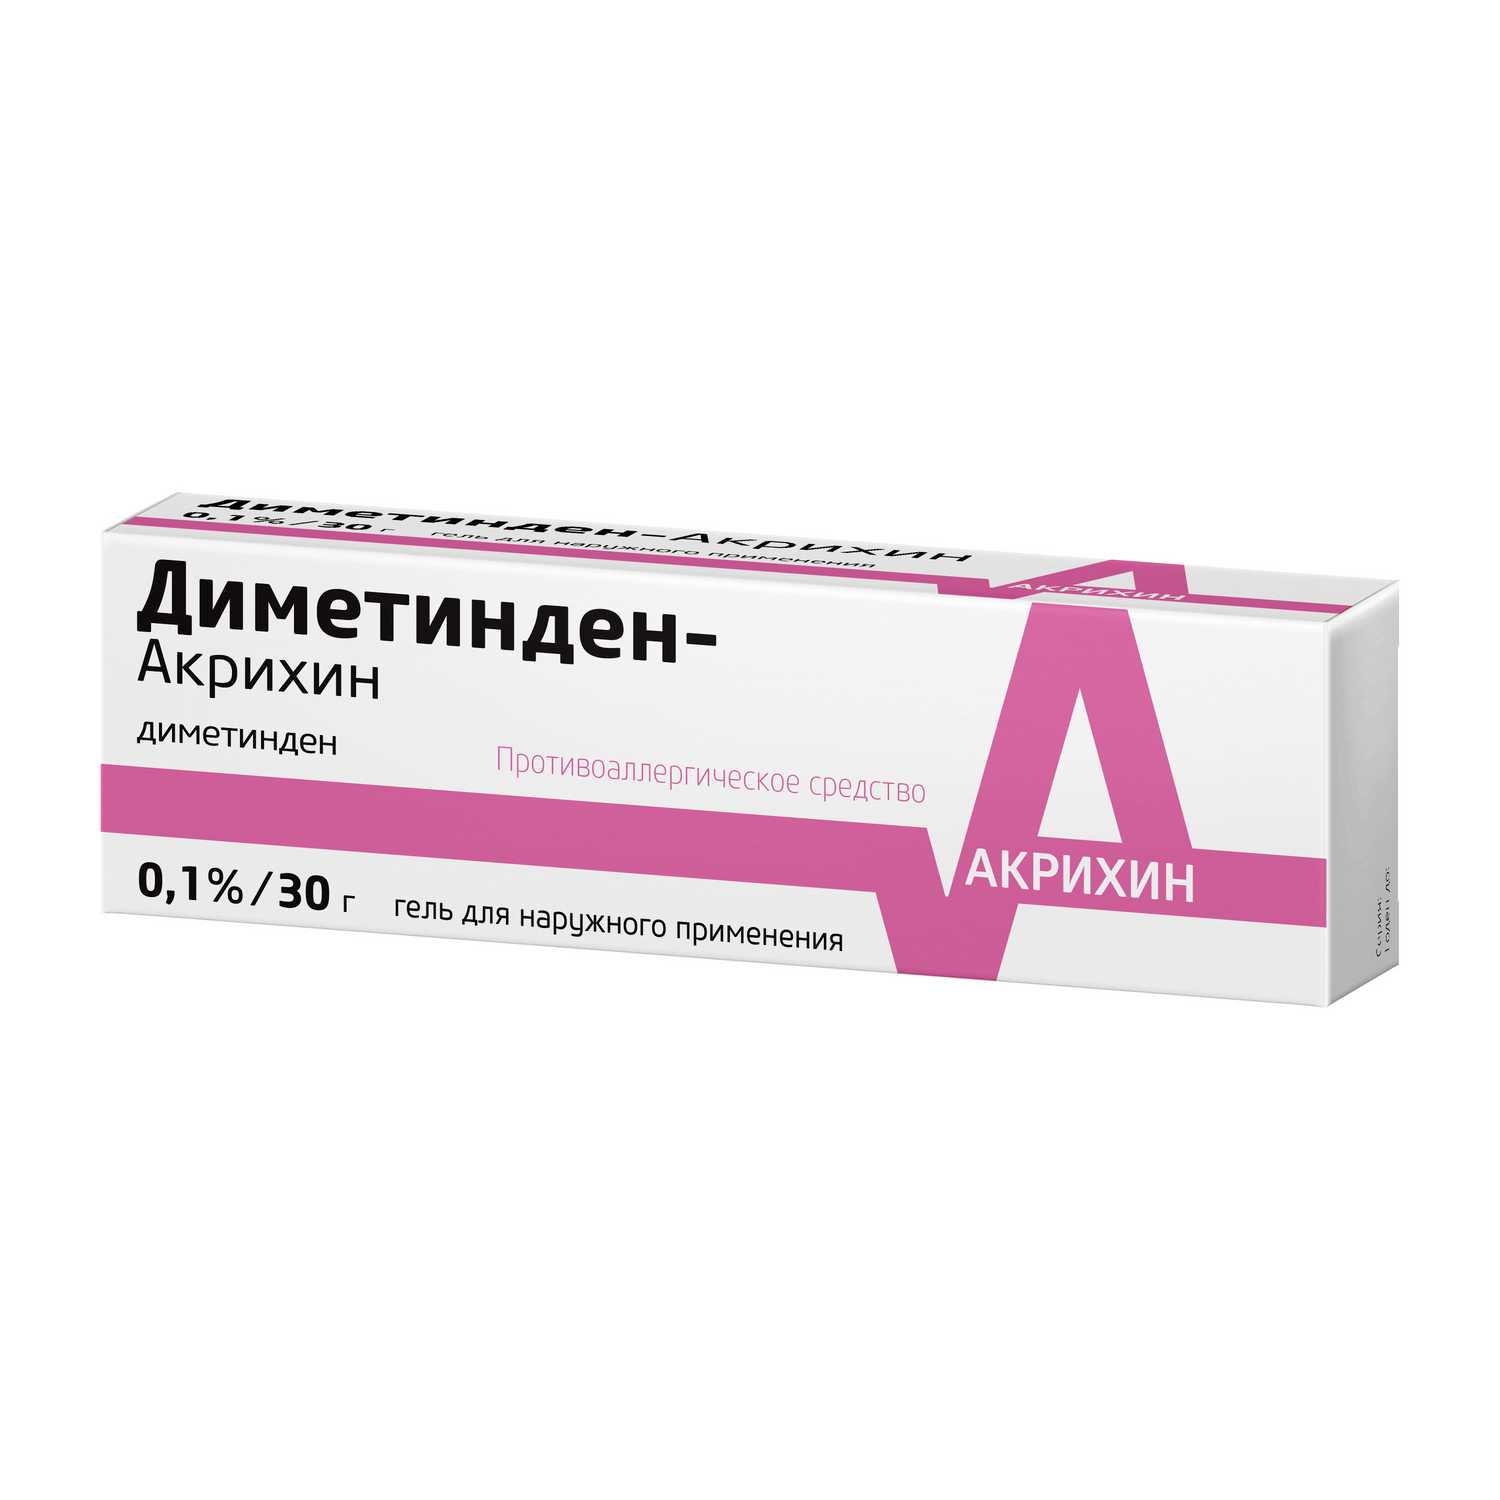 Купить Диметинден-Акрихин гель 0.1% 30 г (диметинден) по выгодной цене .